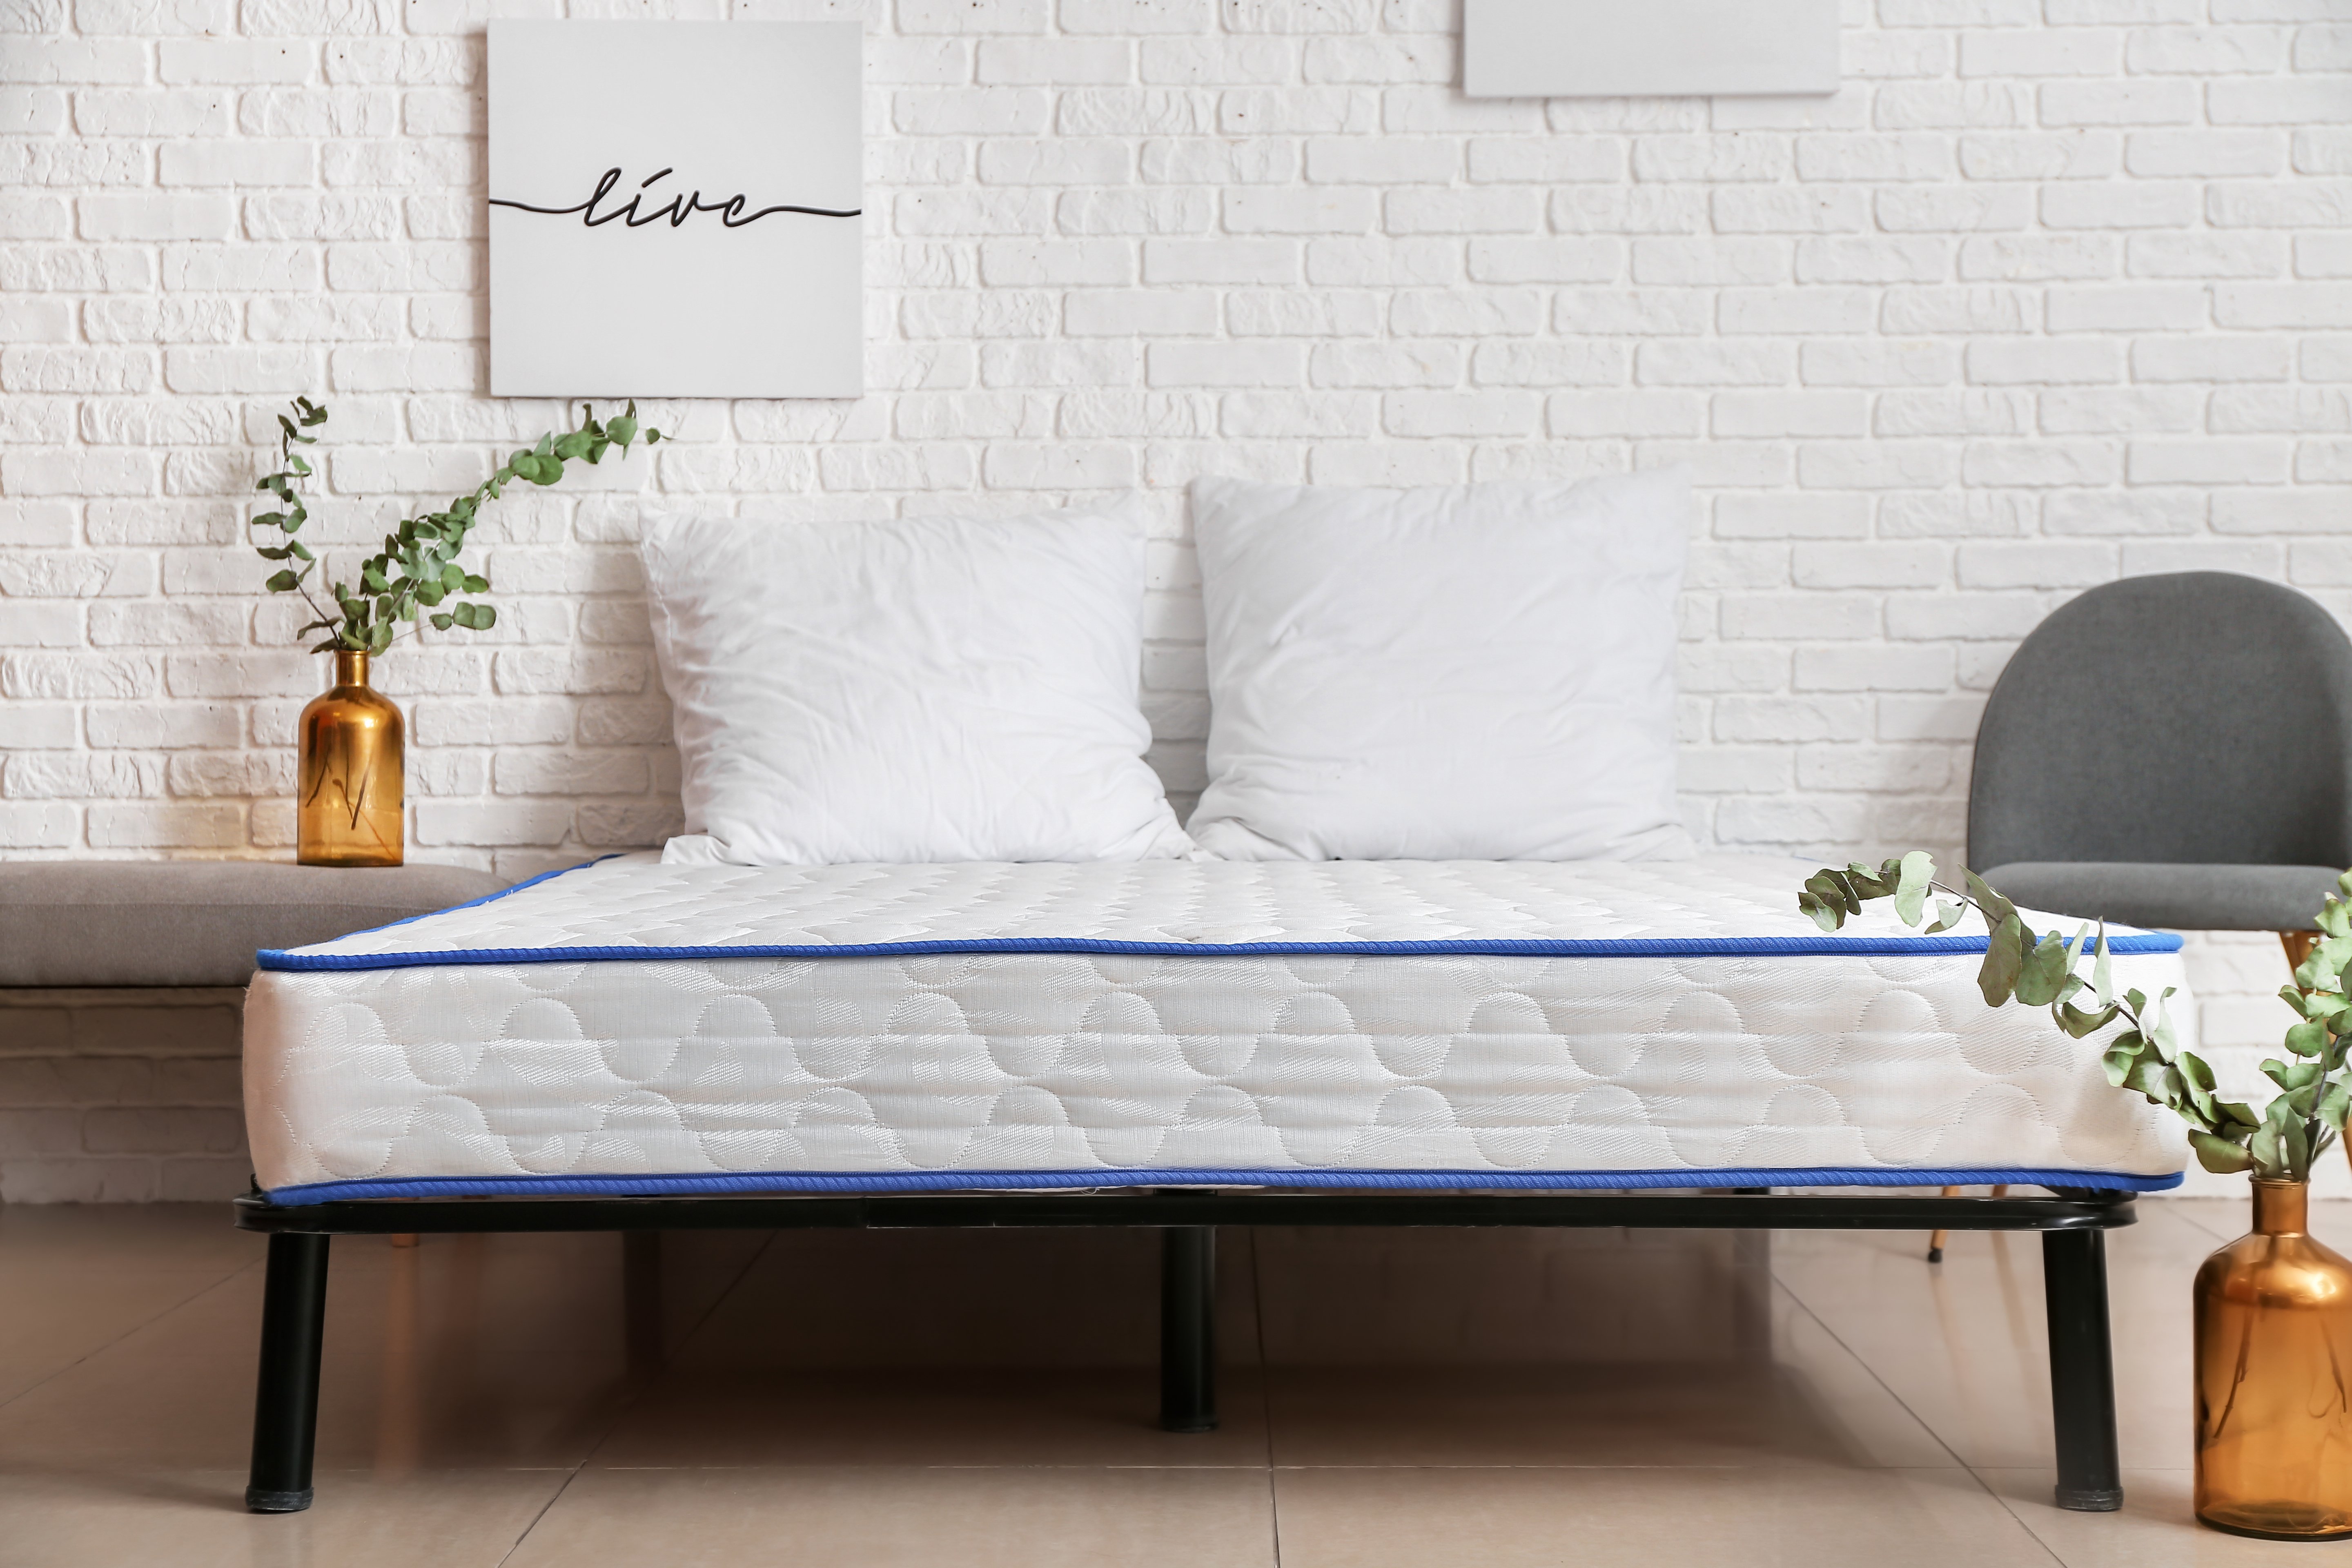 Auf einem Bett liegt eine weiße Matratze und zwei weiße Kopfkissen.